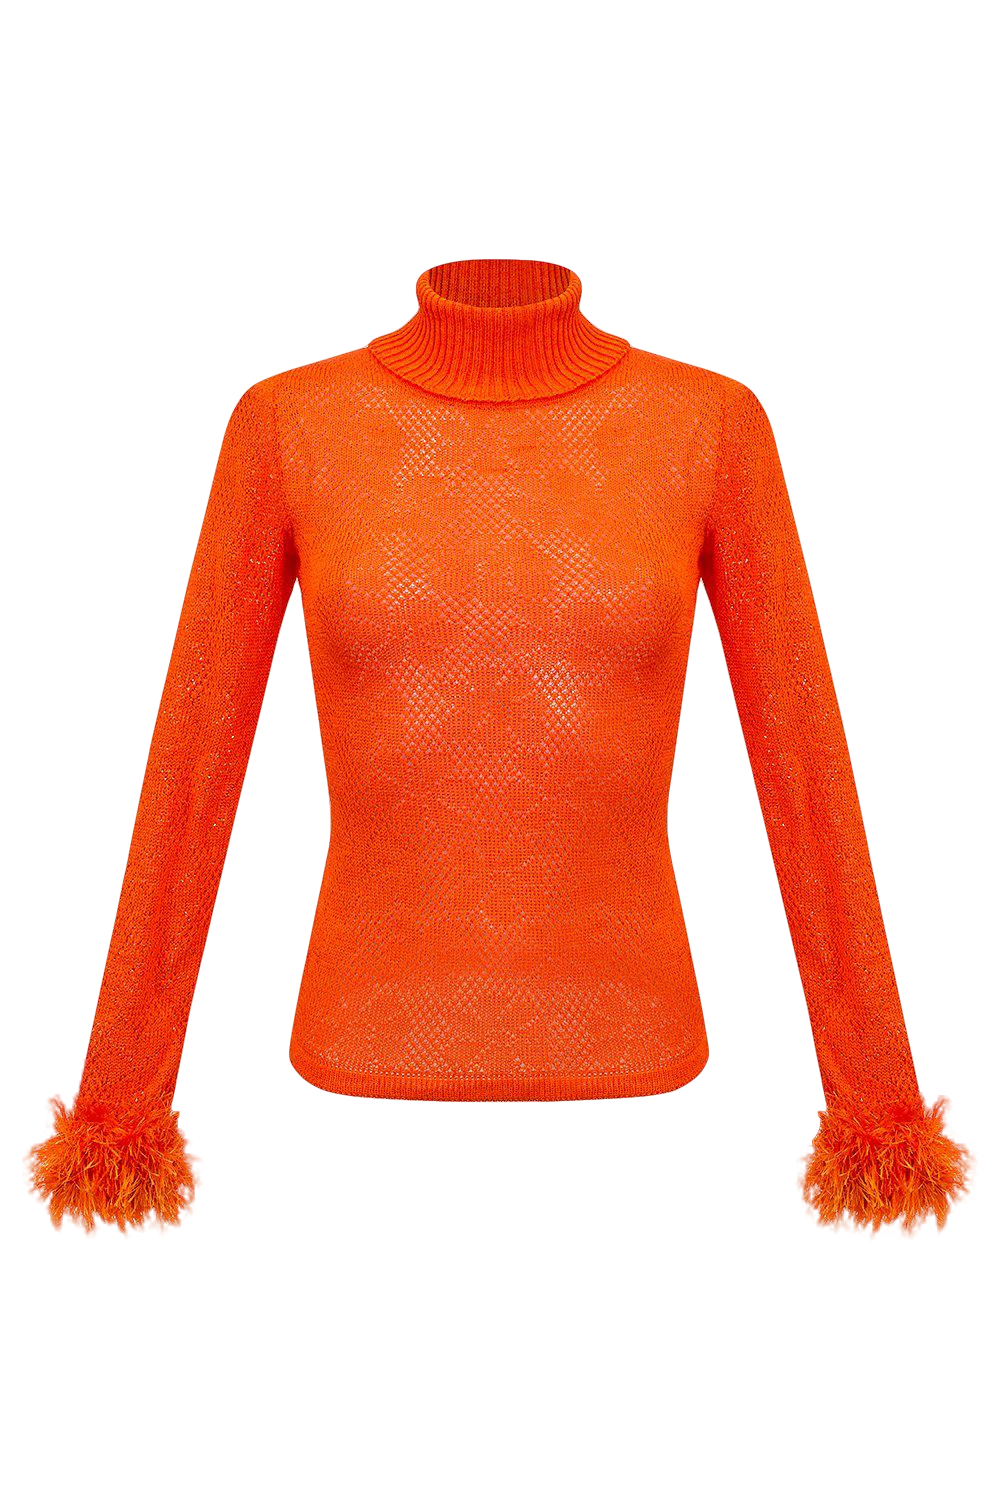 Orange knit turtleneck with handmade knit details von ANDREEVA